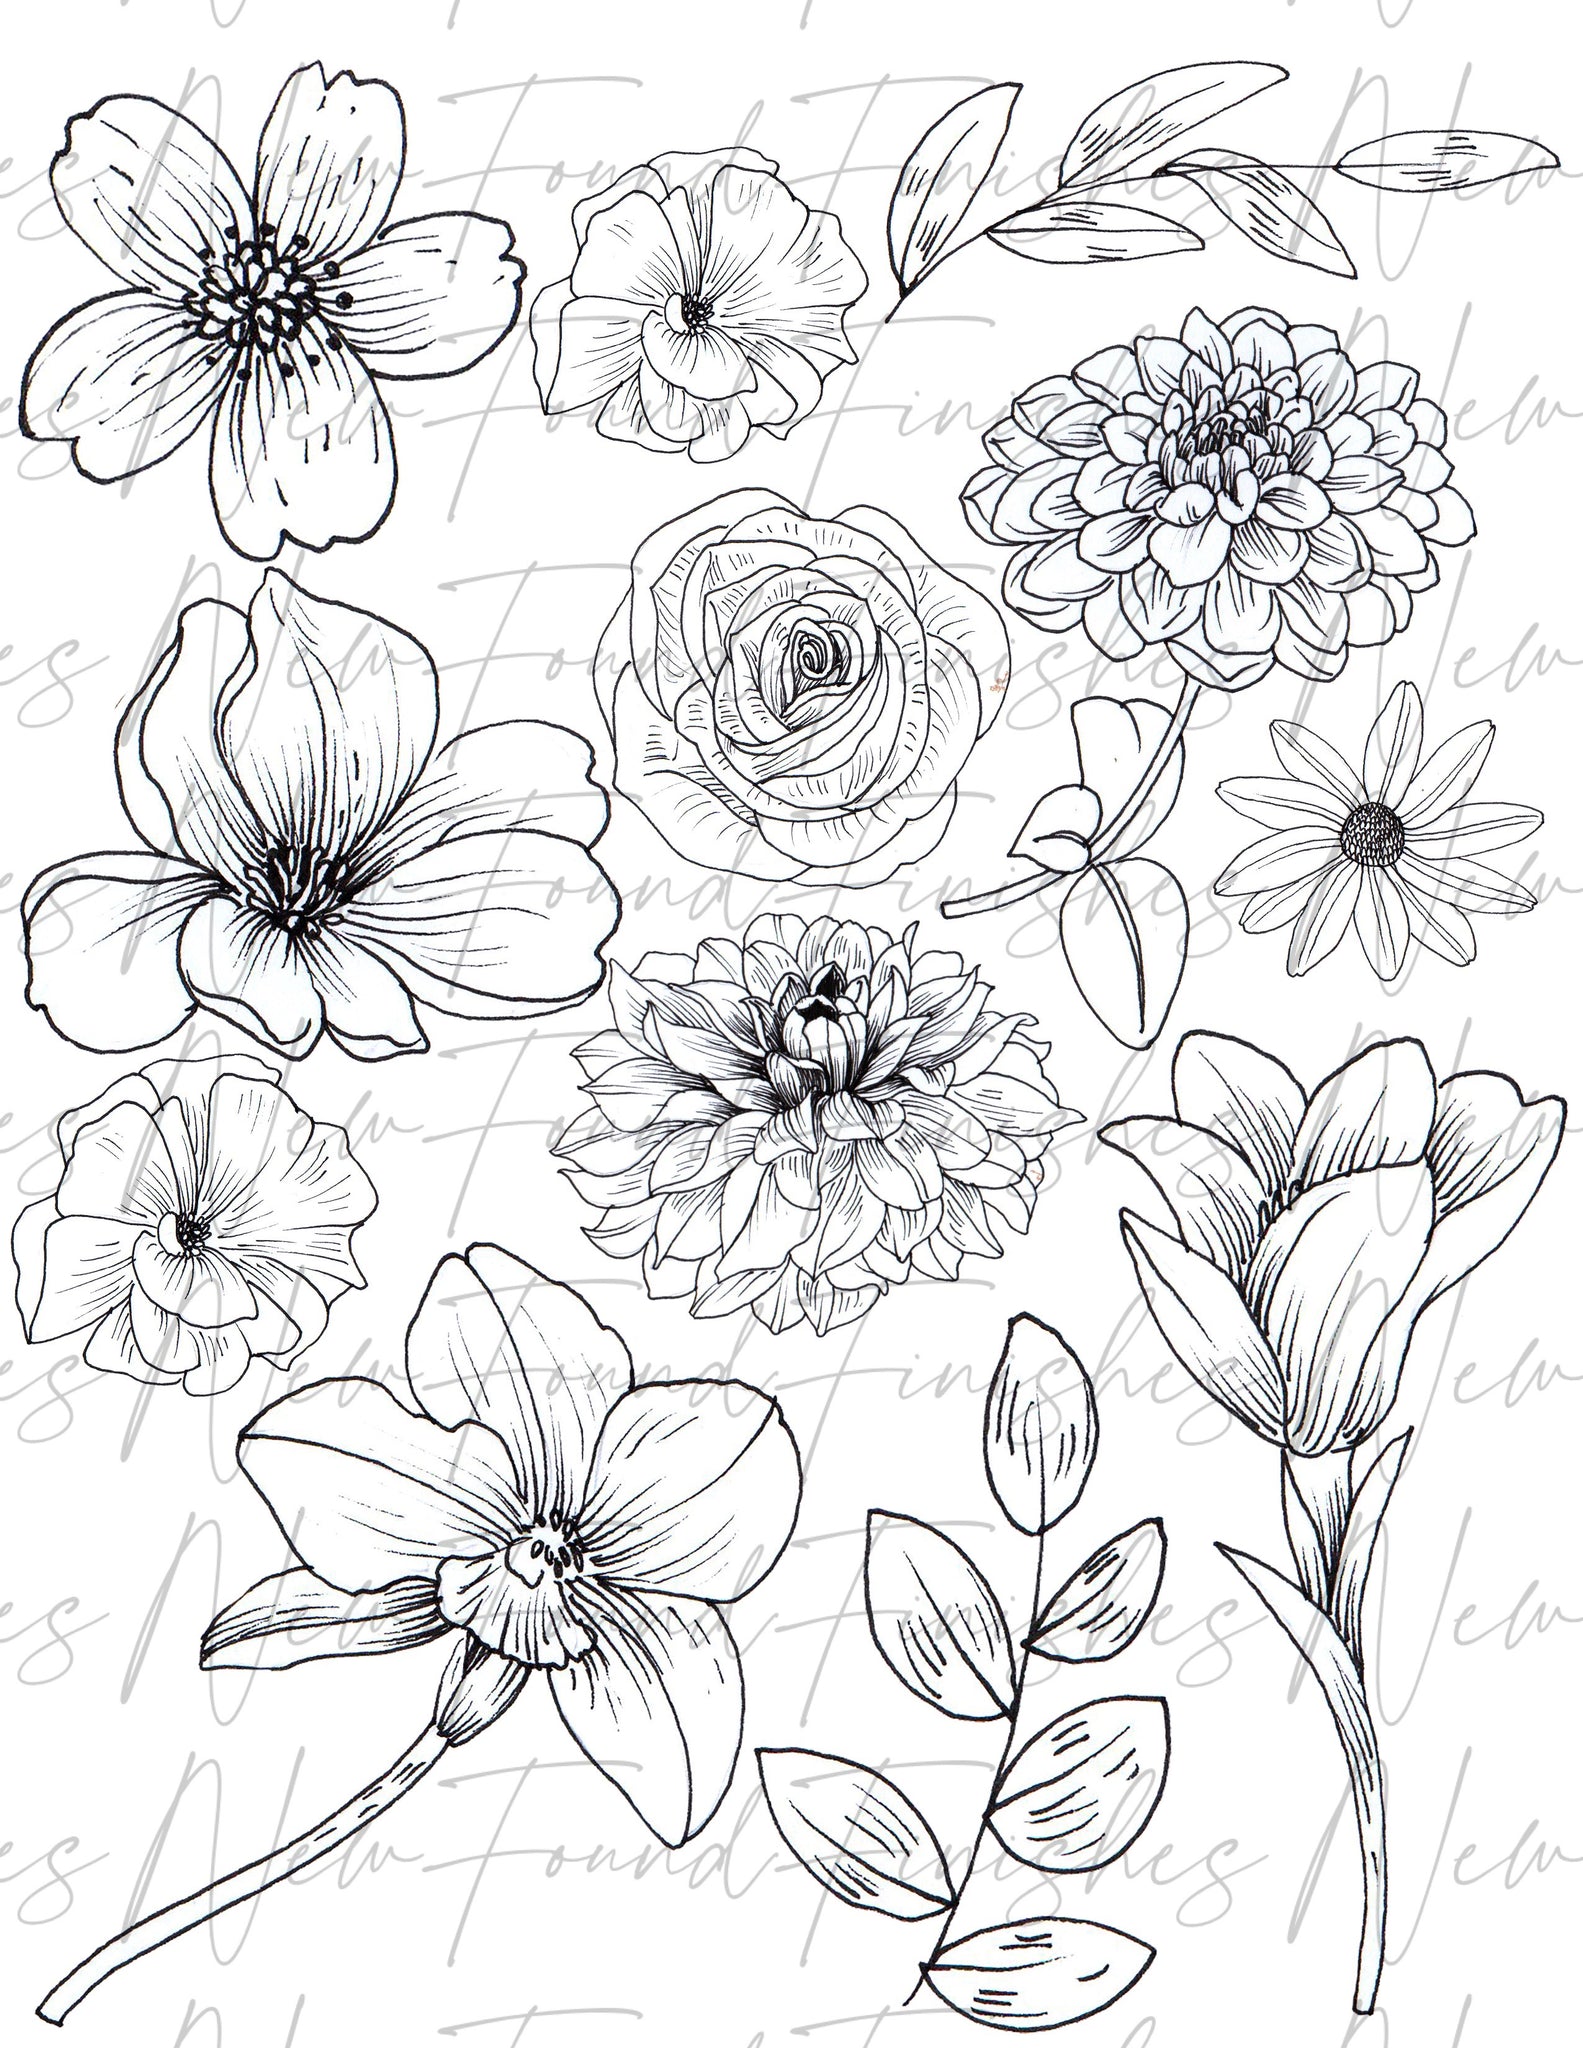 Line drawing floral 2 DARK pack